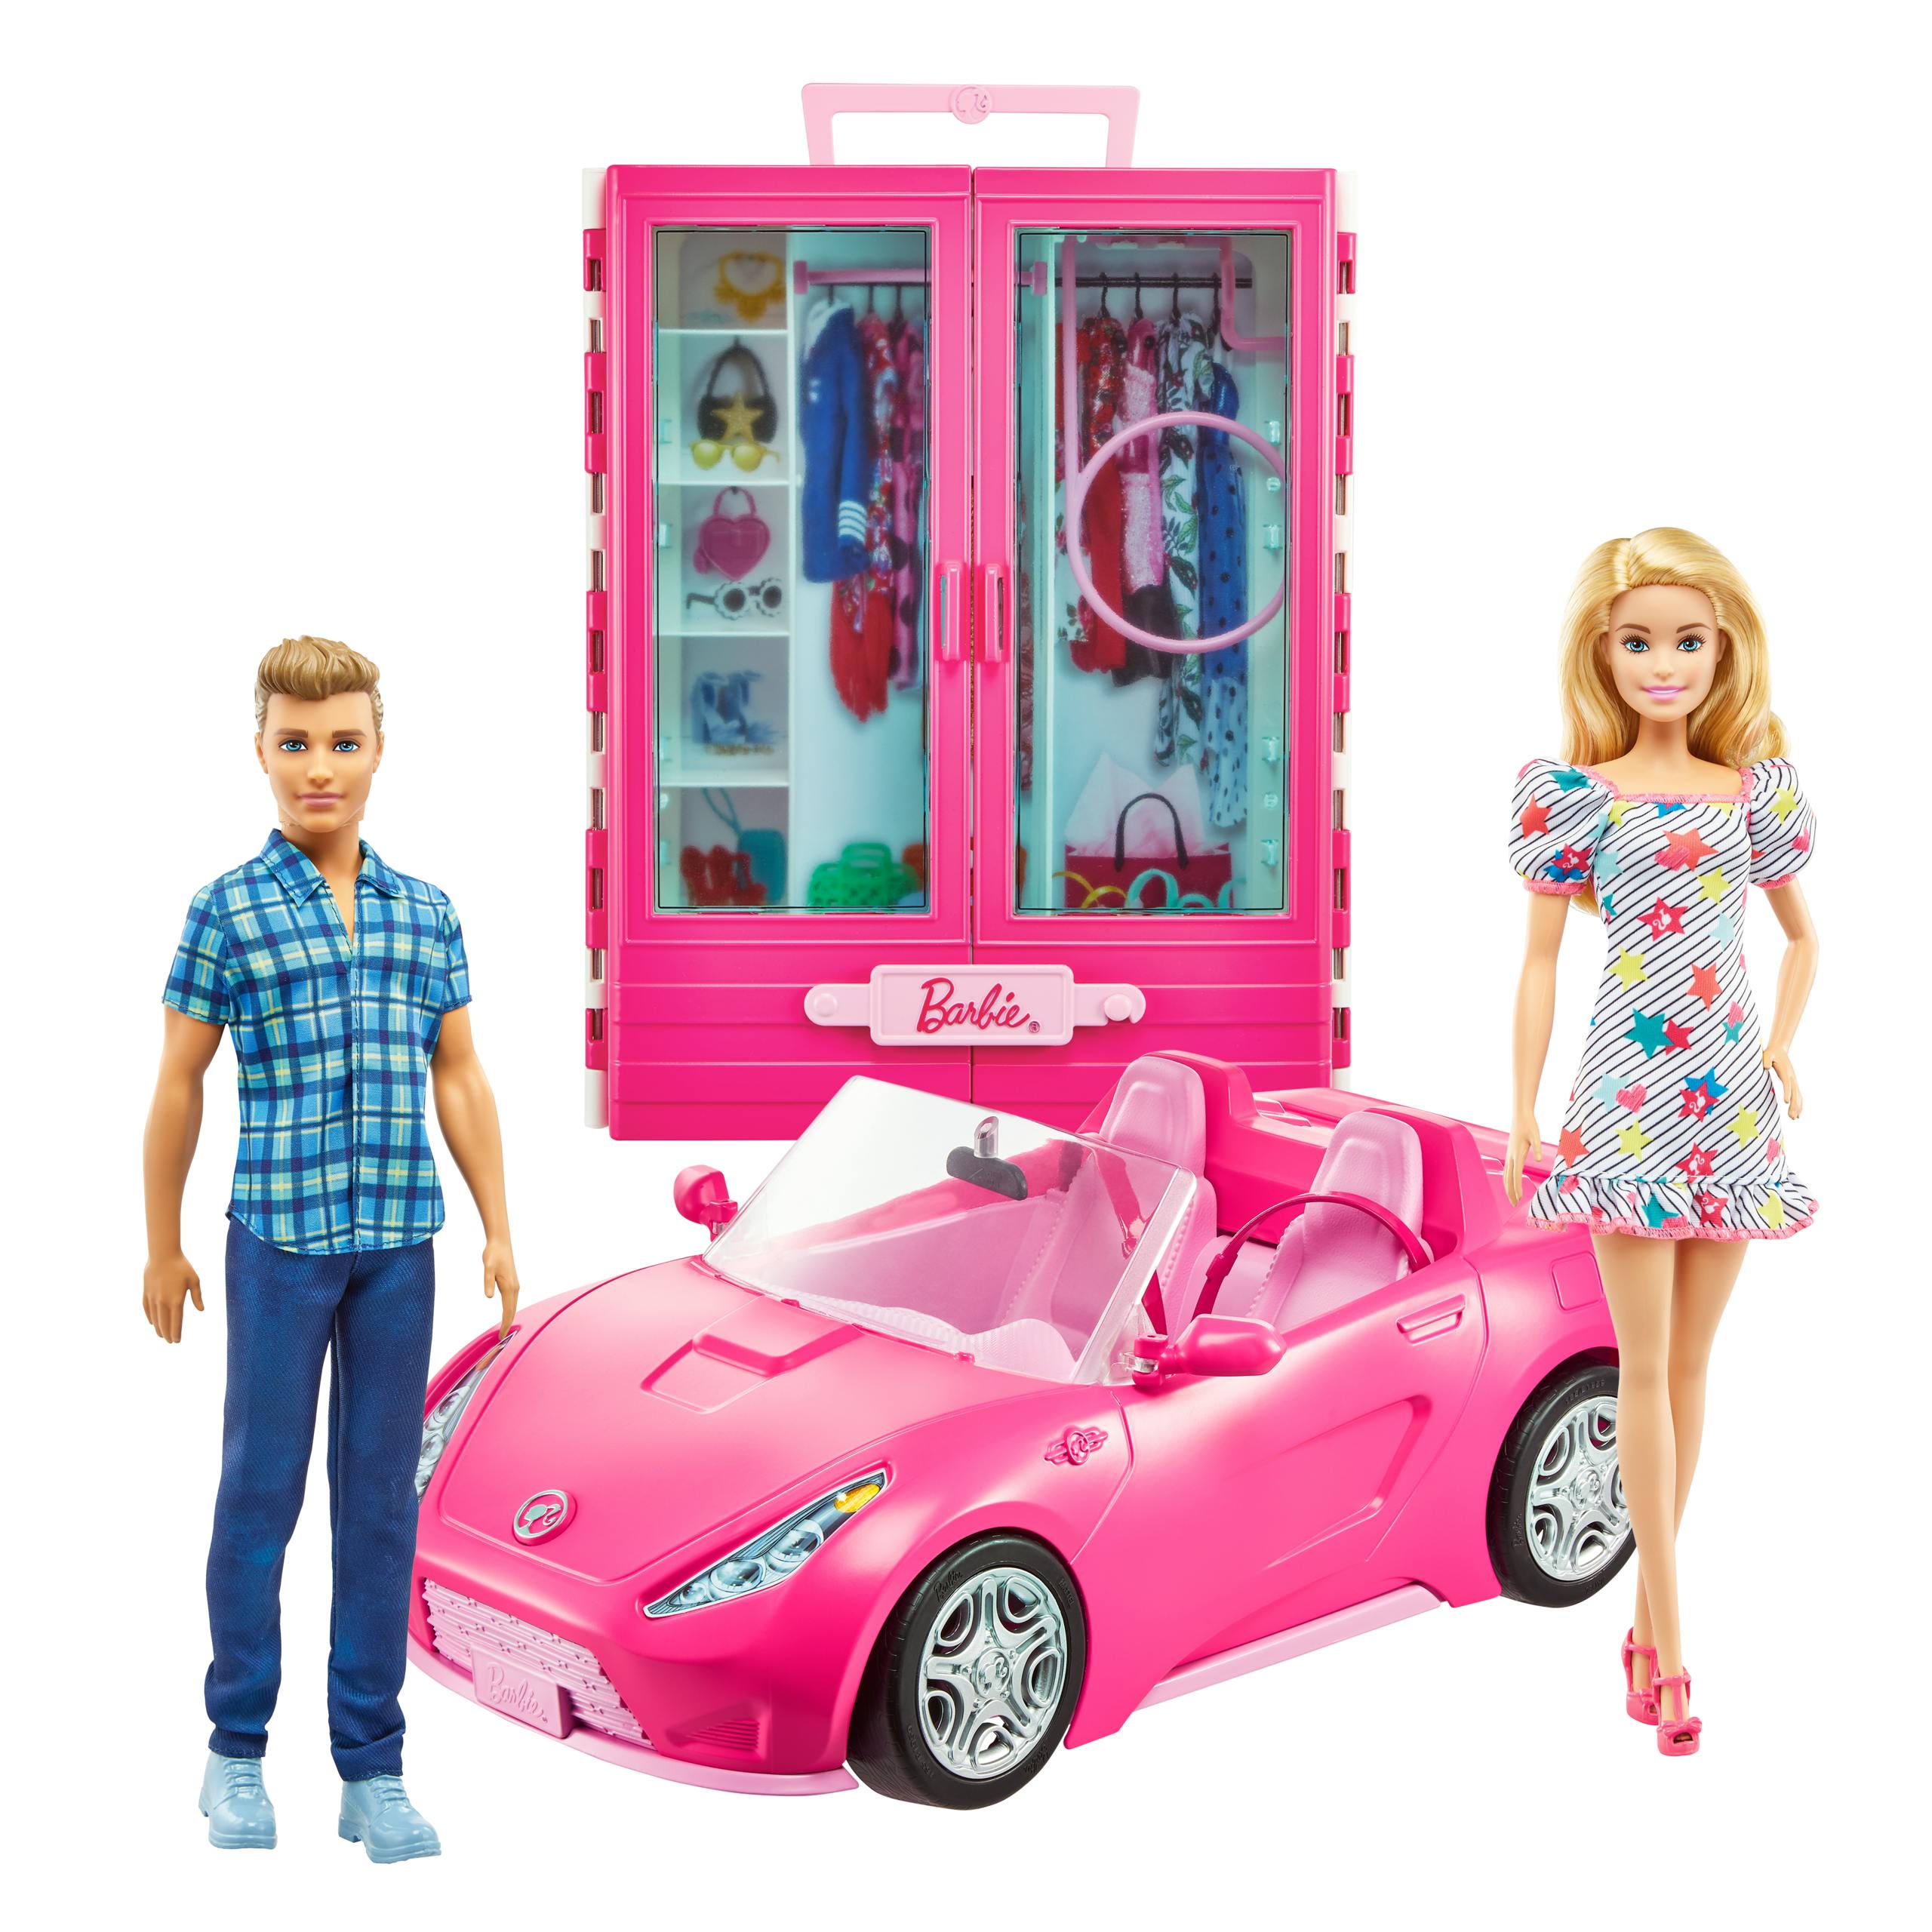 hardwerkend Een goede vriend Vertrek Barbie + Ken pop met kleerkast en cabrio auto